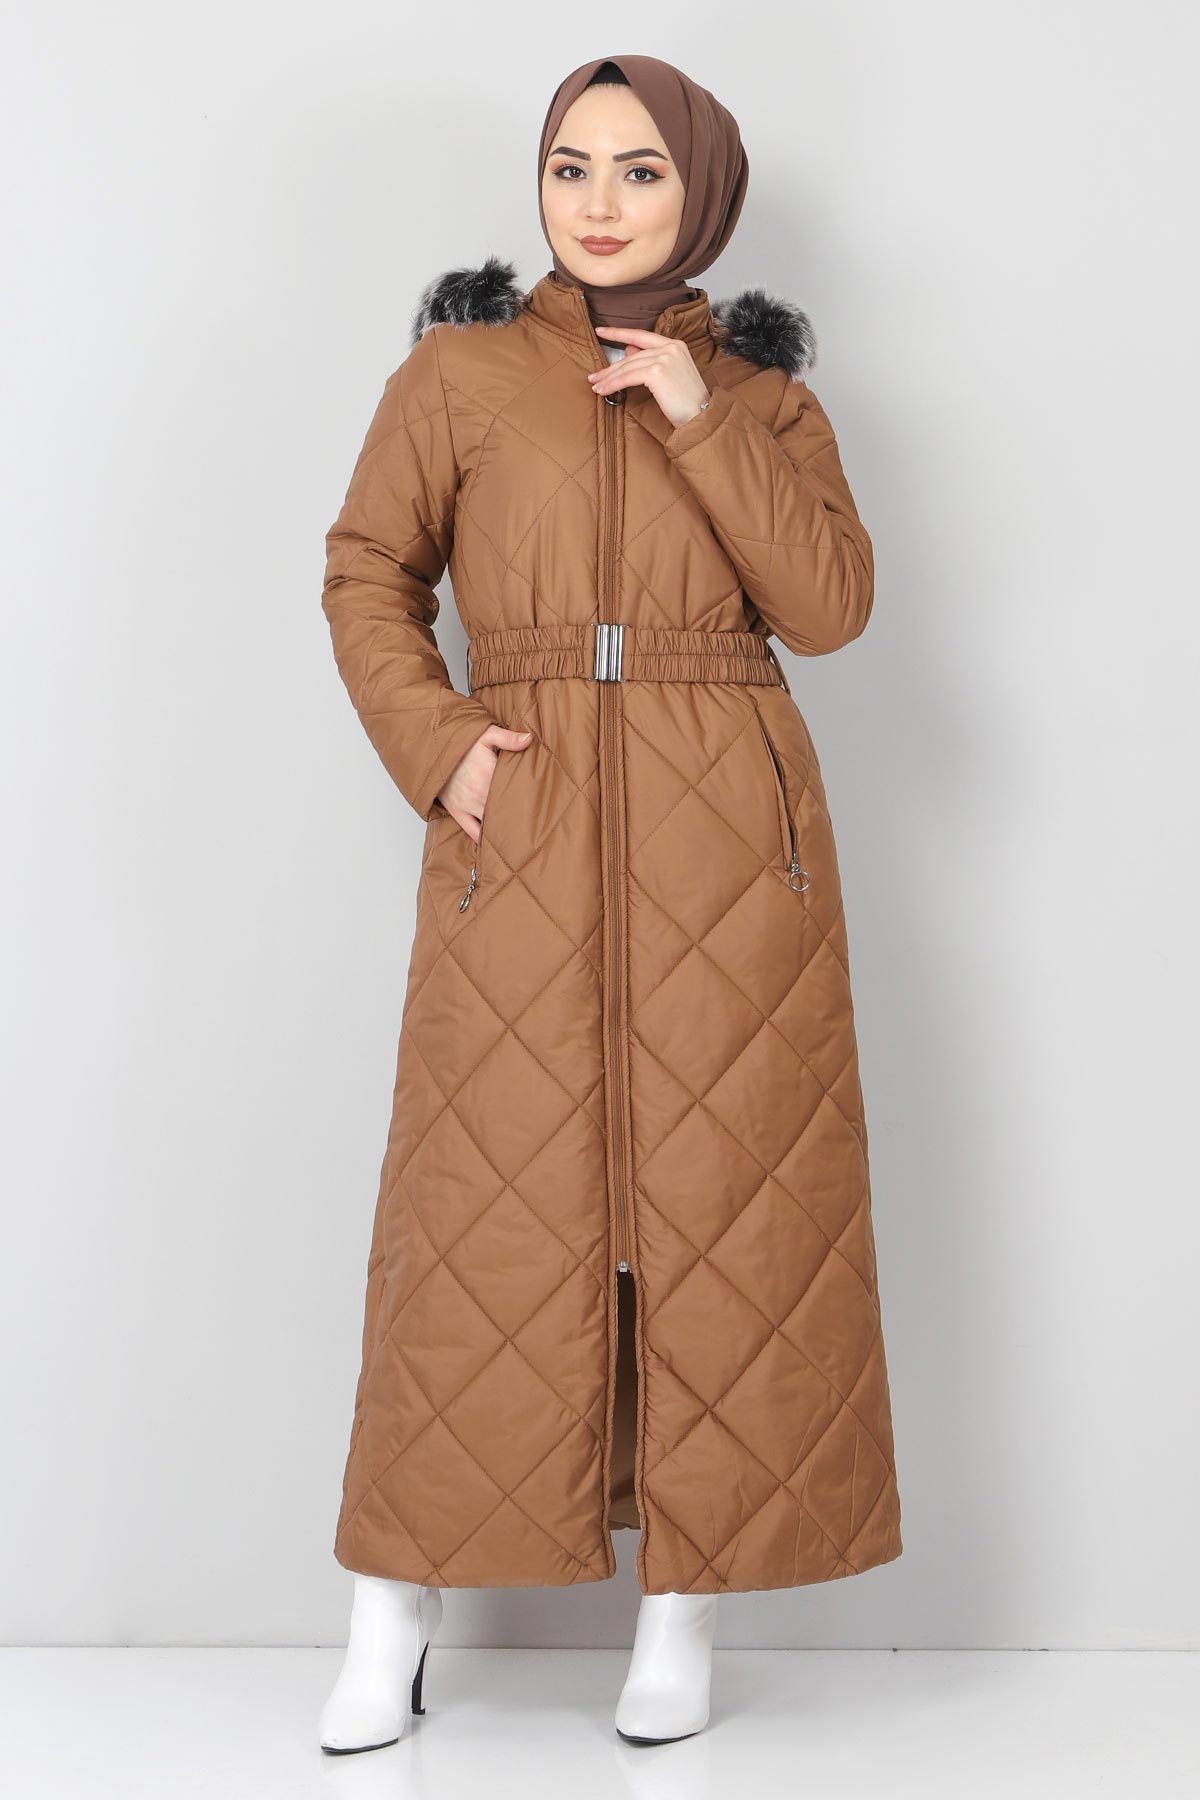 Tesettür Dünyası - Fur Quilted Coat TSD1346 Light Brown